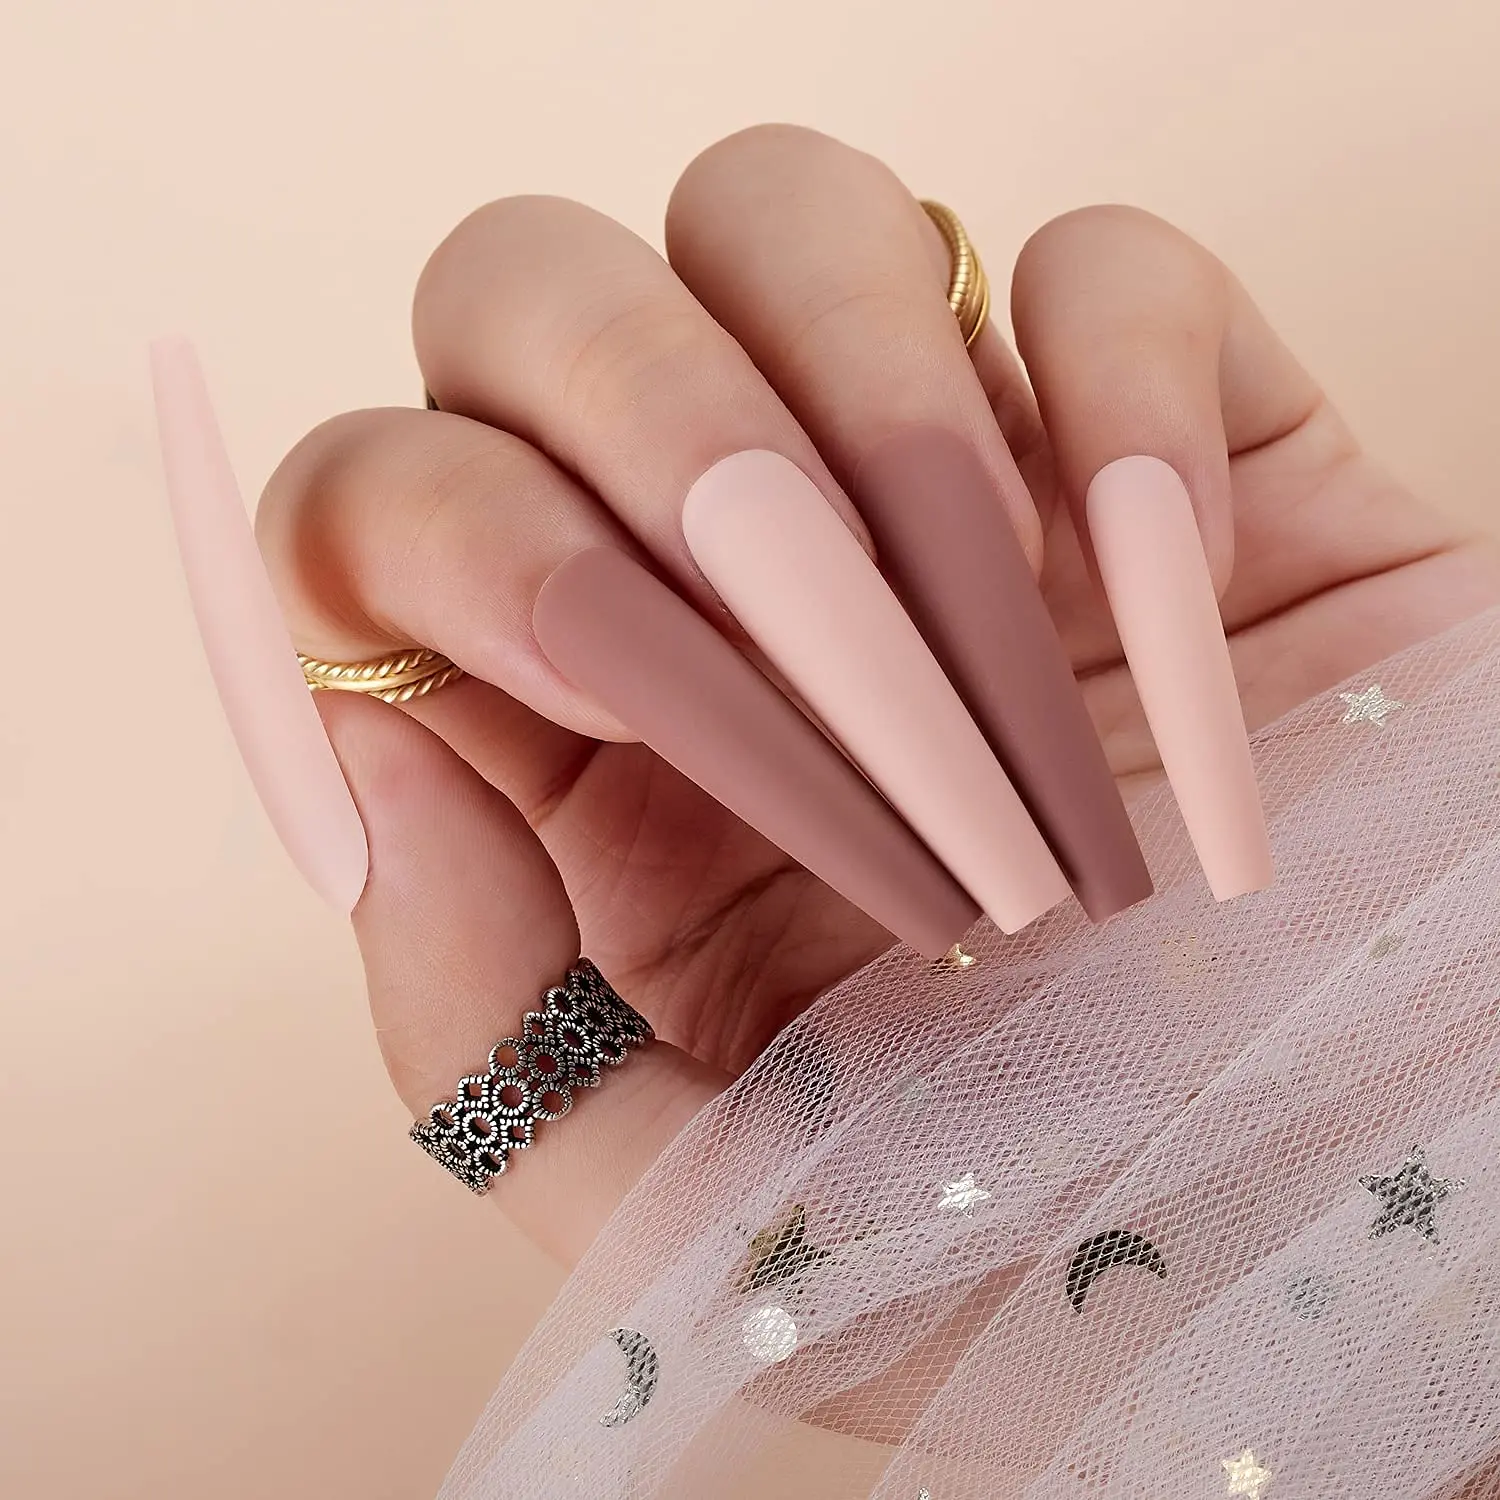 Makart drücken auf nägel kit xxl lang, kleben auf nägel acryl nagels pitzen nackt & rosa französische künstliche nägel 12 größen 24 pcs sarg nägel